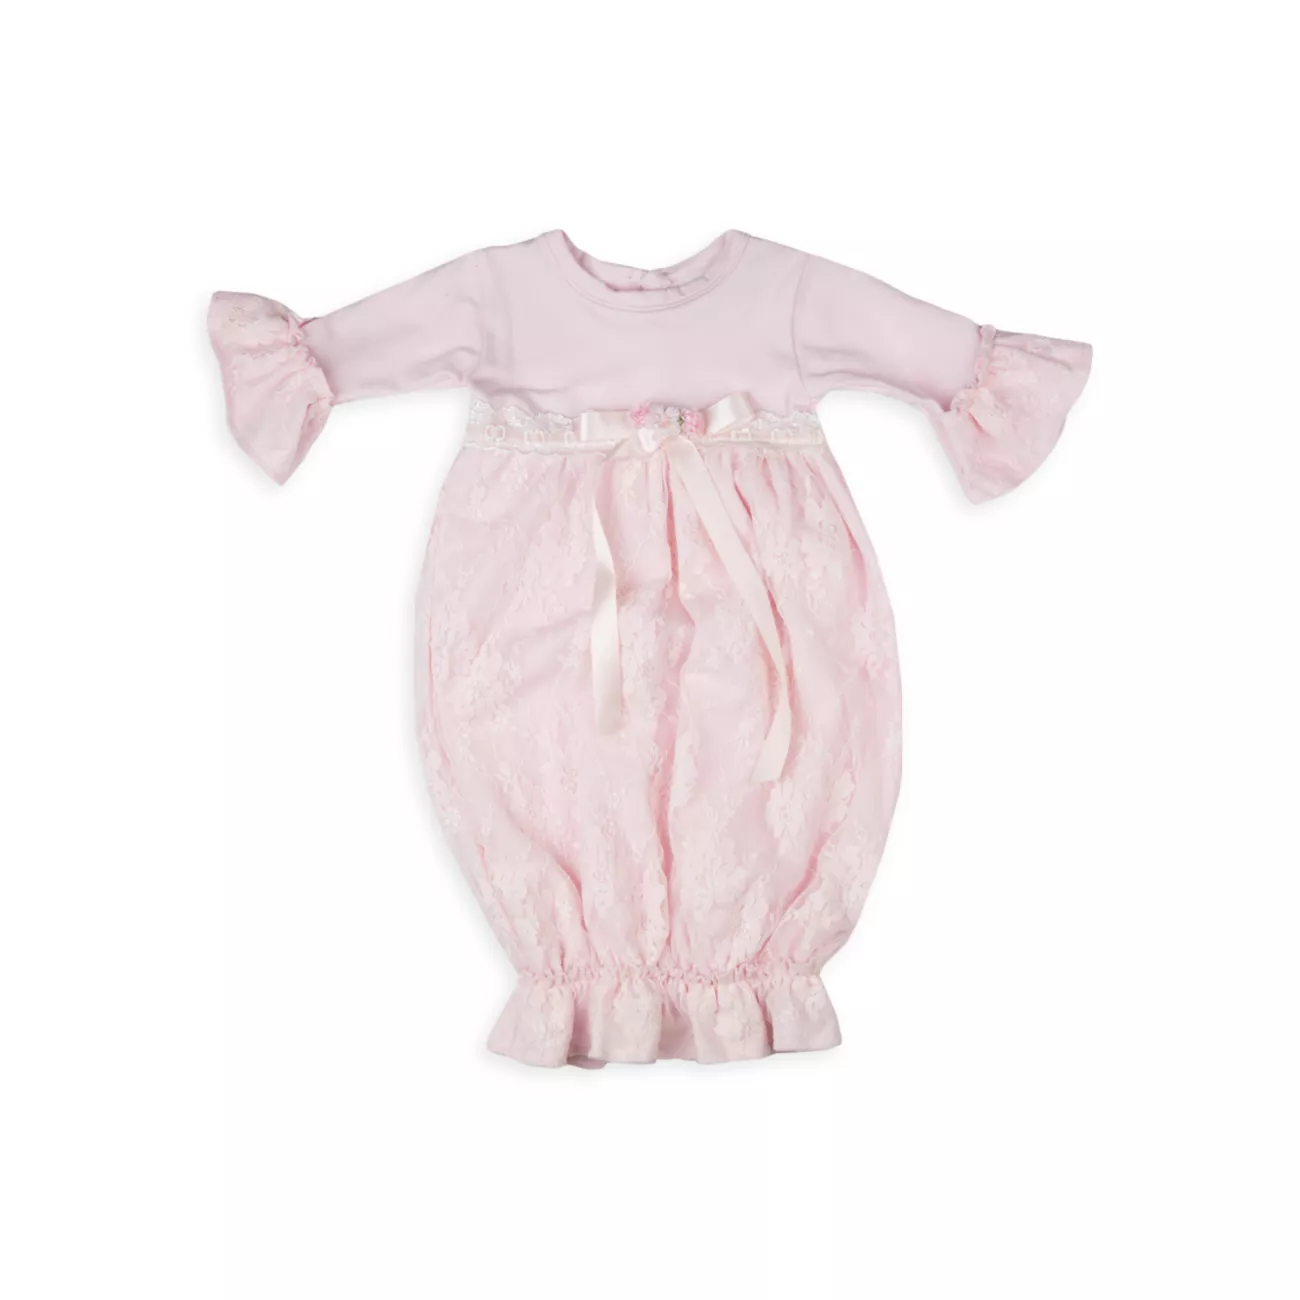 Сладкое платье с пузырчатой розой для девочки Haute Baby